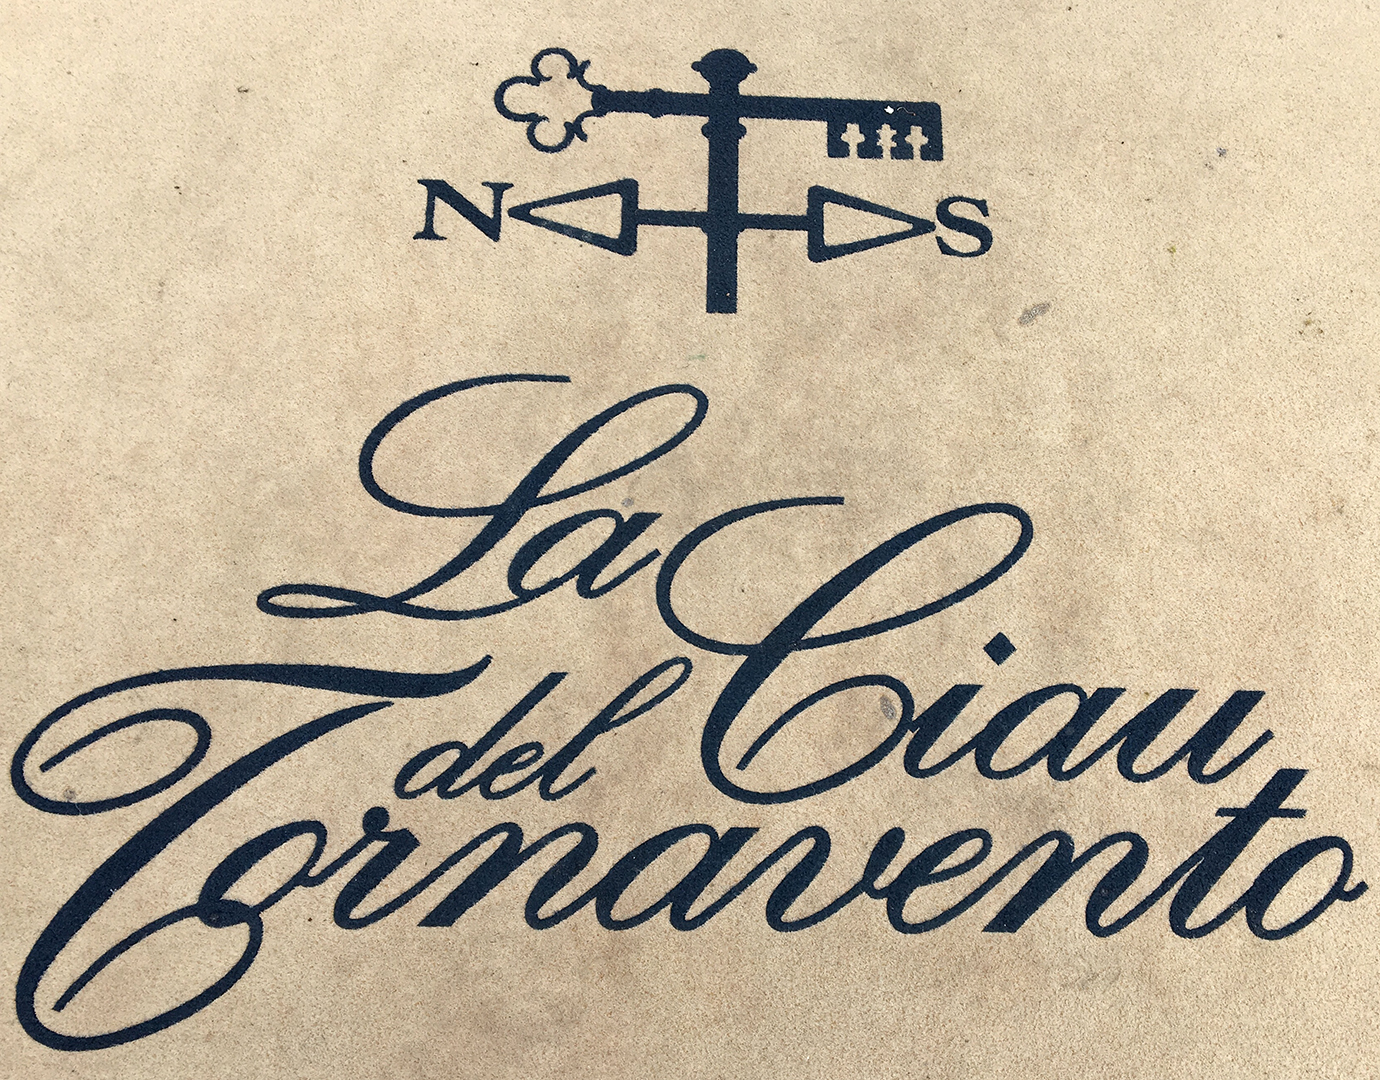 Logo in script typeface for La Ciau del Tornavento